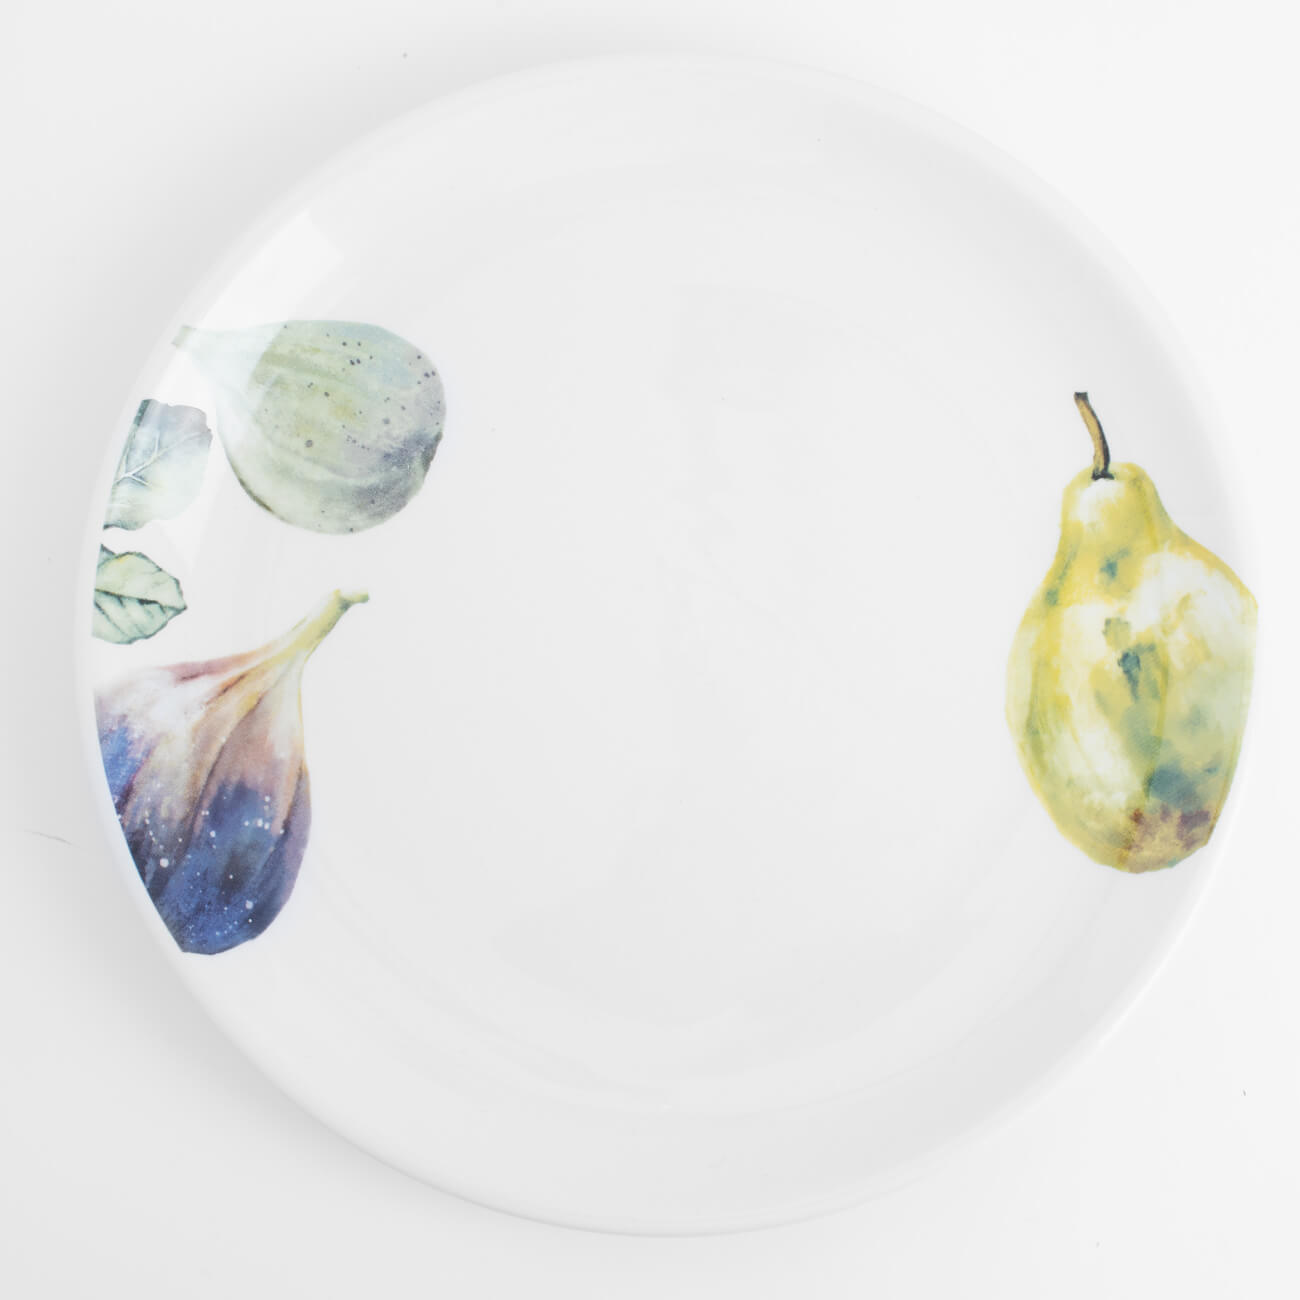 Тарелка закусочная, 21 см, керамика, белая, Инжир и груша, Fruit garden - фото 1